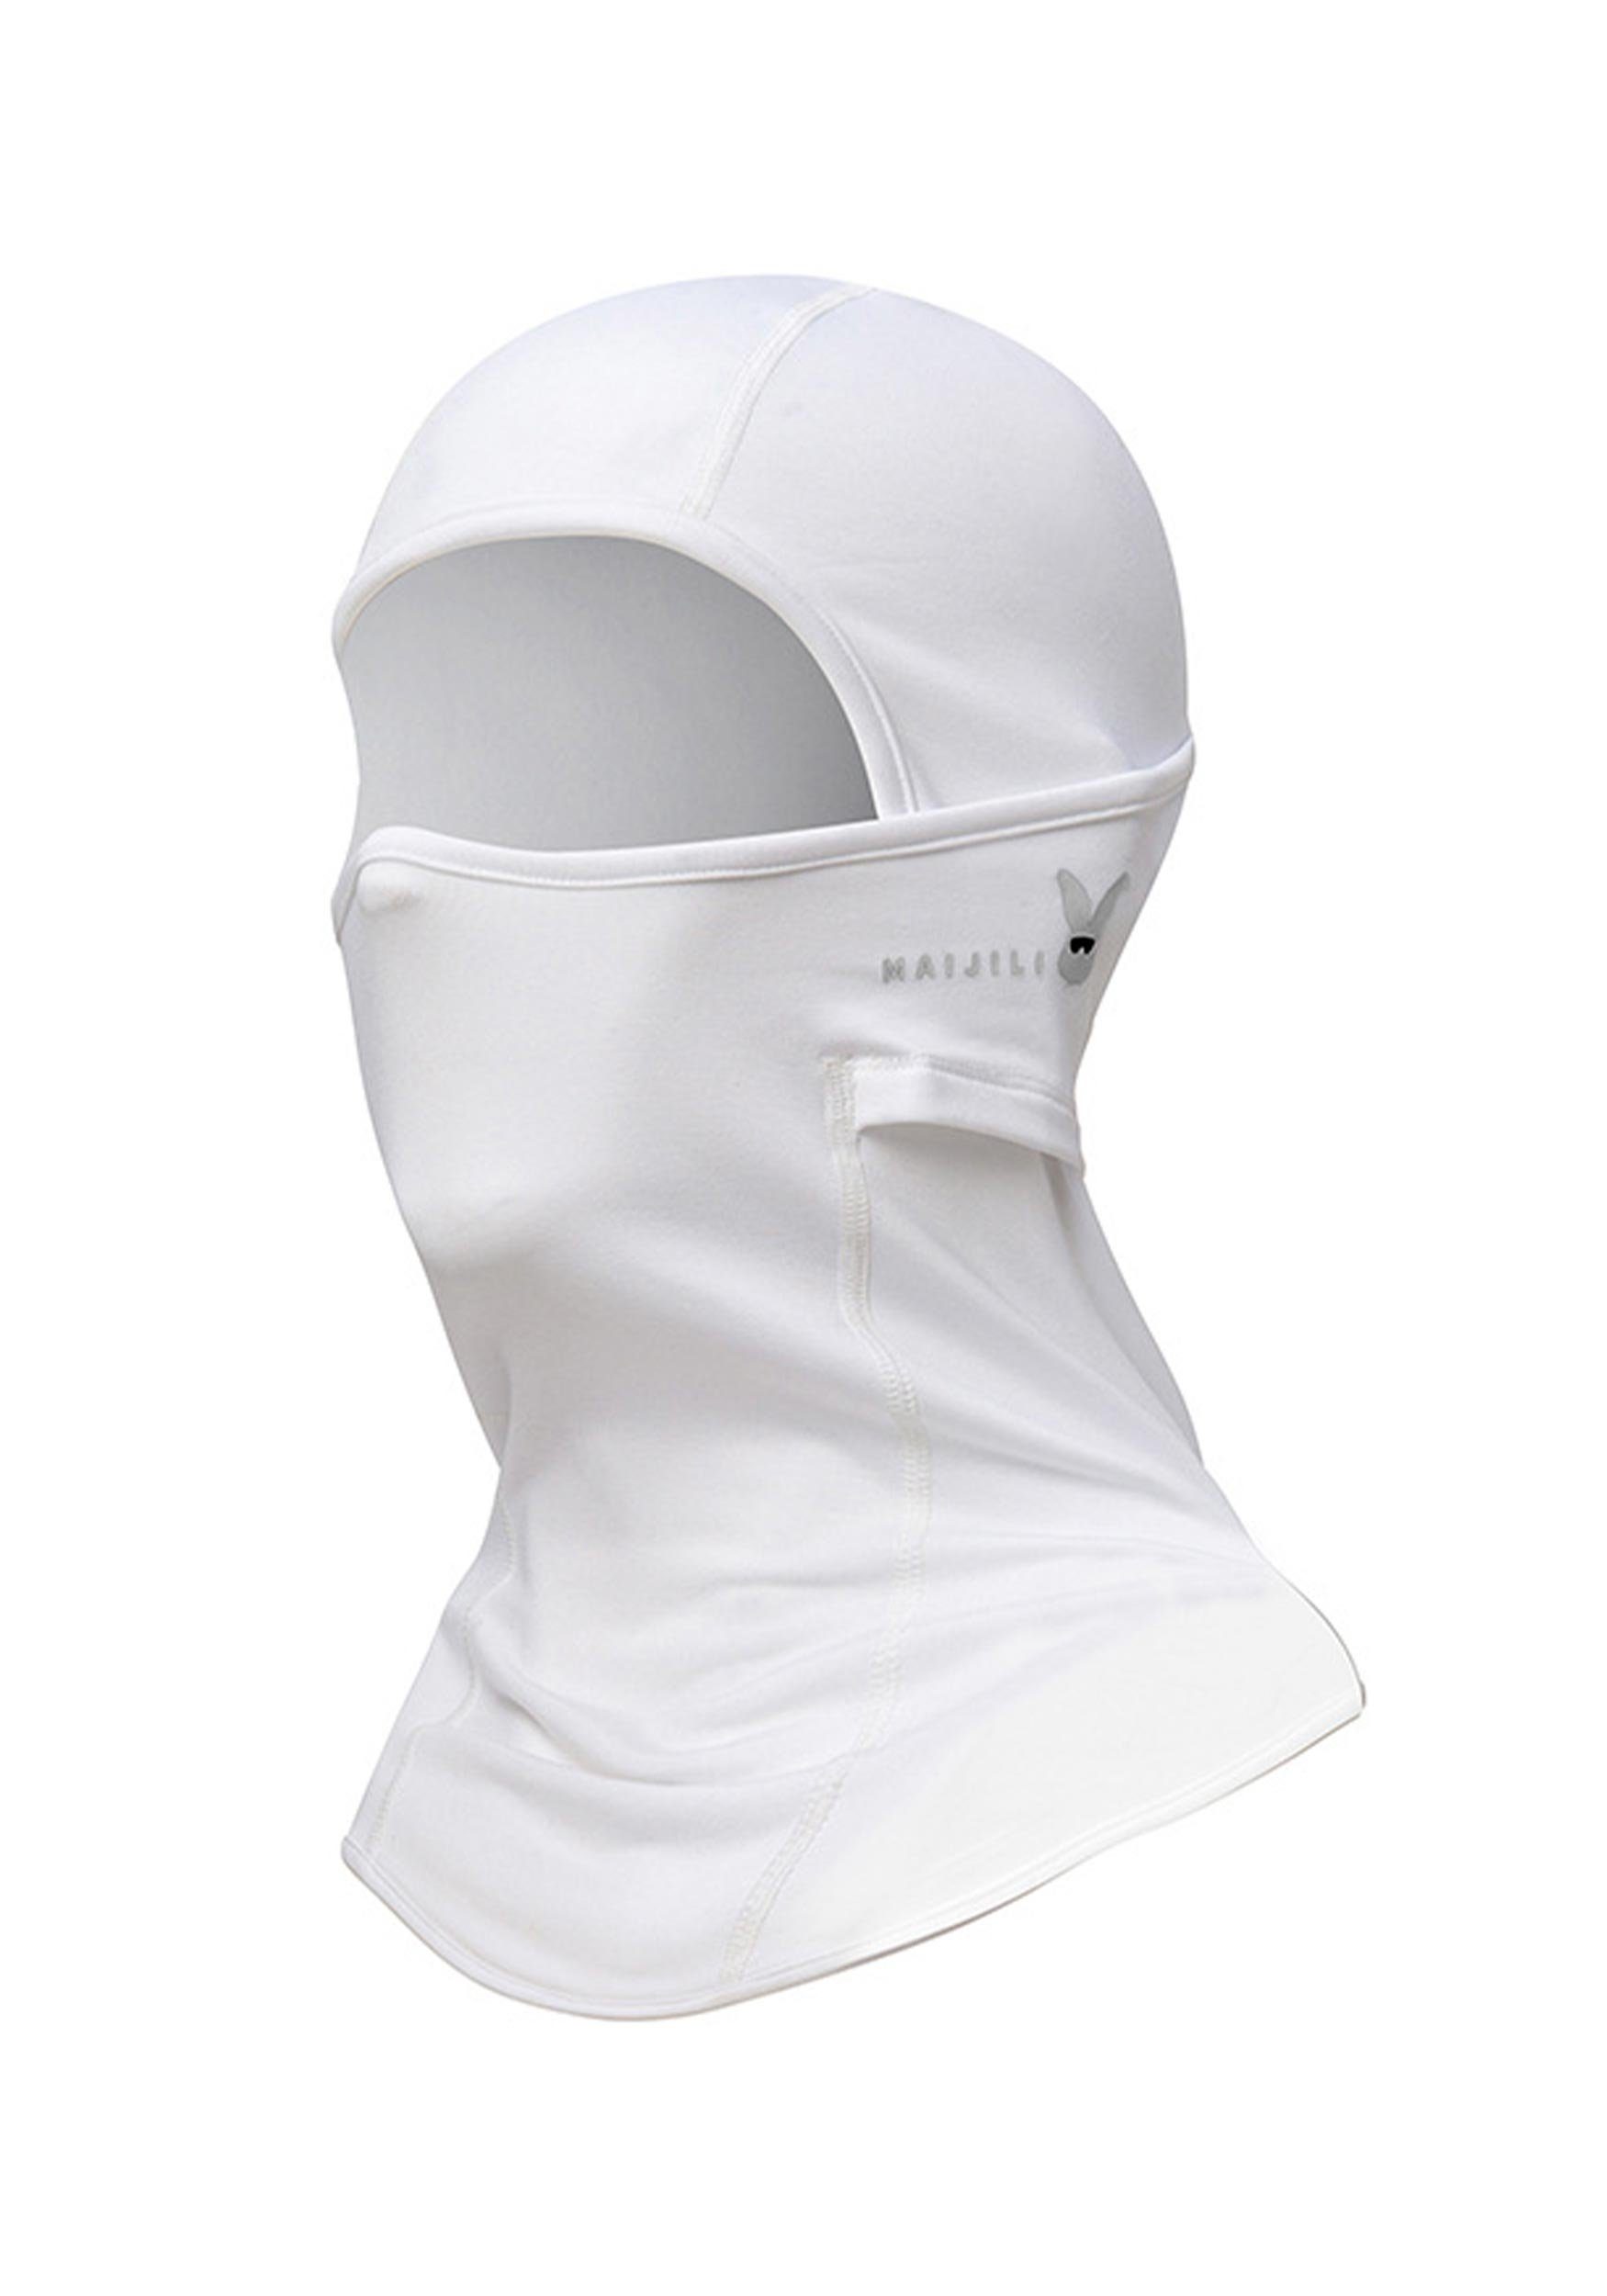 MAGICSHE Sturmhaube Skimaske für Umfassenden Schutz Widersteht UV-Strahlen Weiß